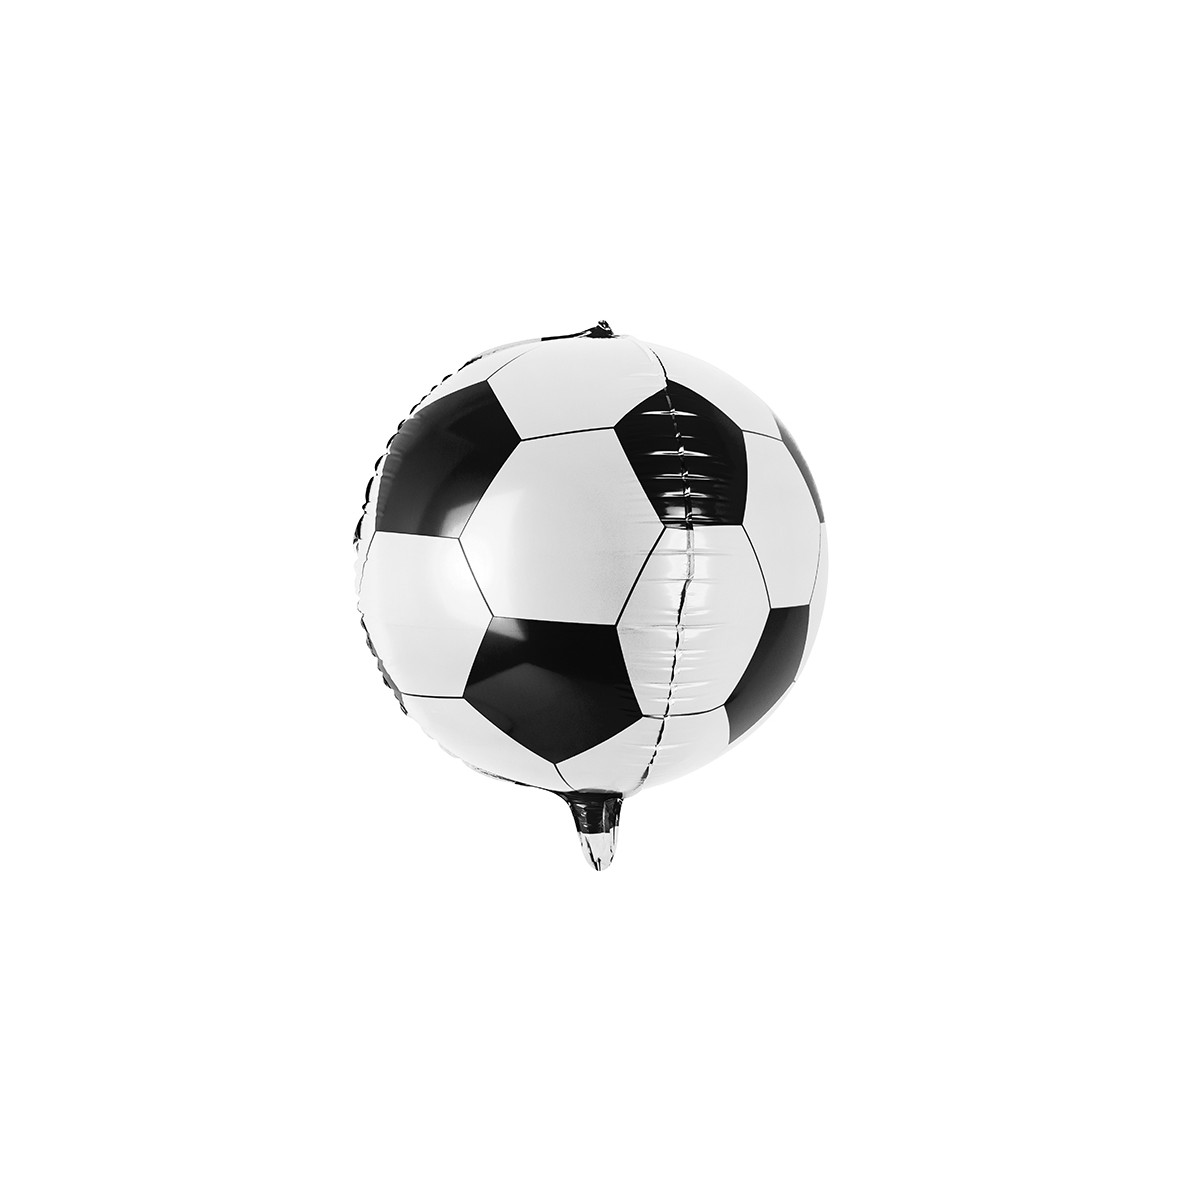 Ballons gonflable thème Football pas cher - Deco fetes pas cher